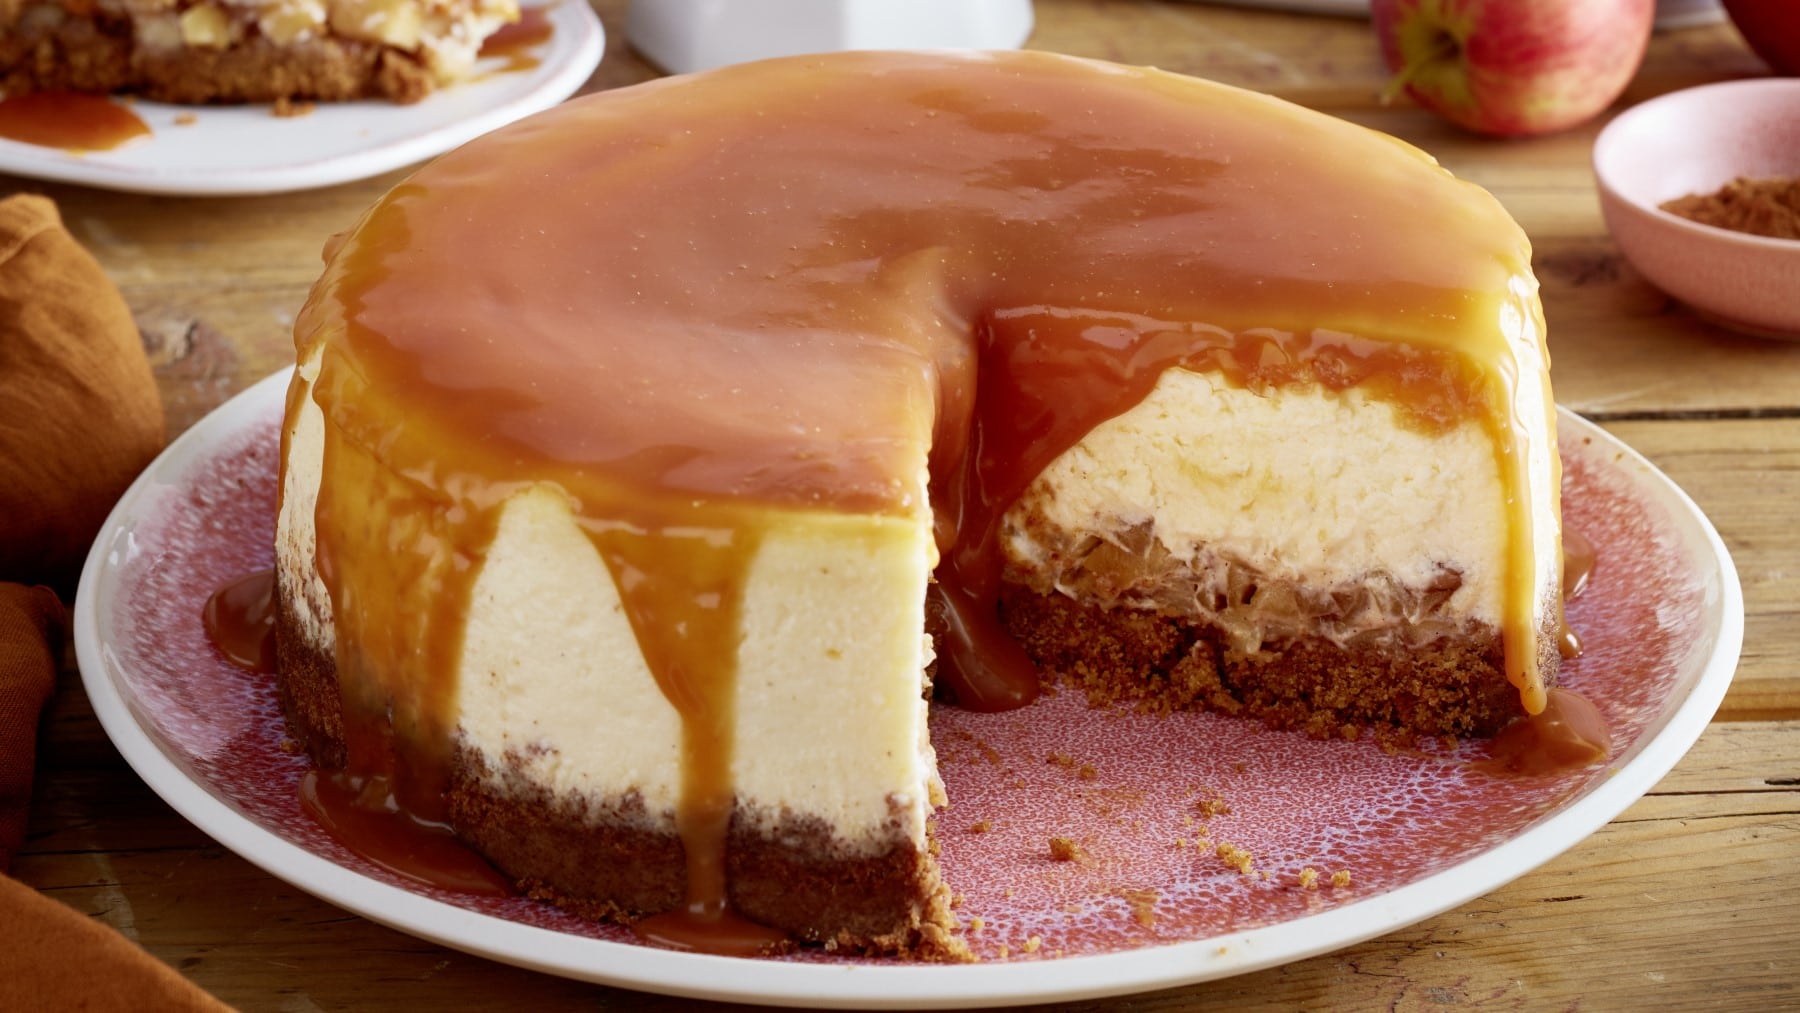 Angeschnittener Apfel-Karamell-Cheesecake auf einem rosa Teller mit Holz und Geschirr im Hintergrund.